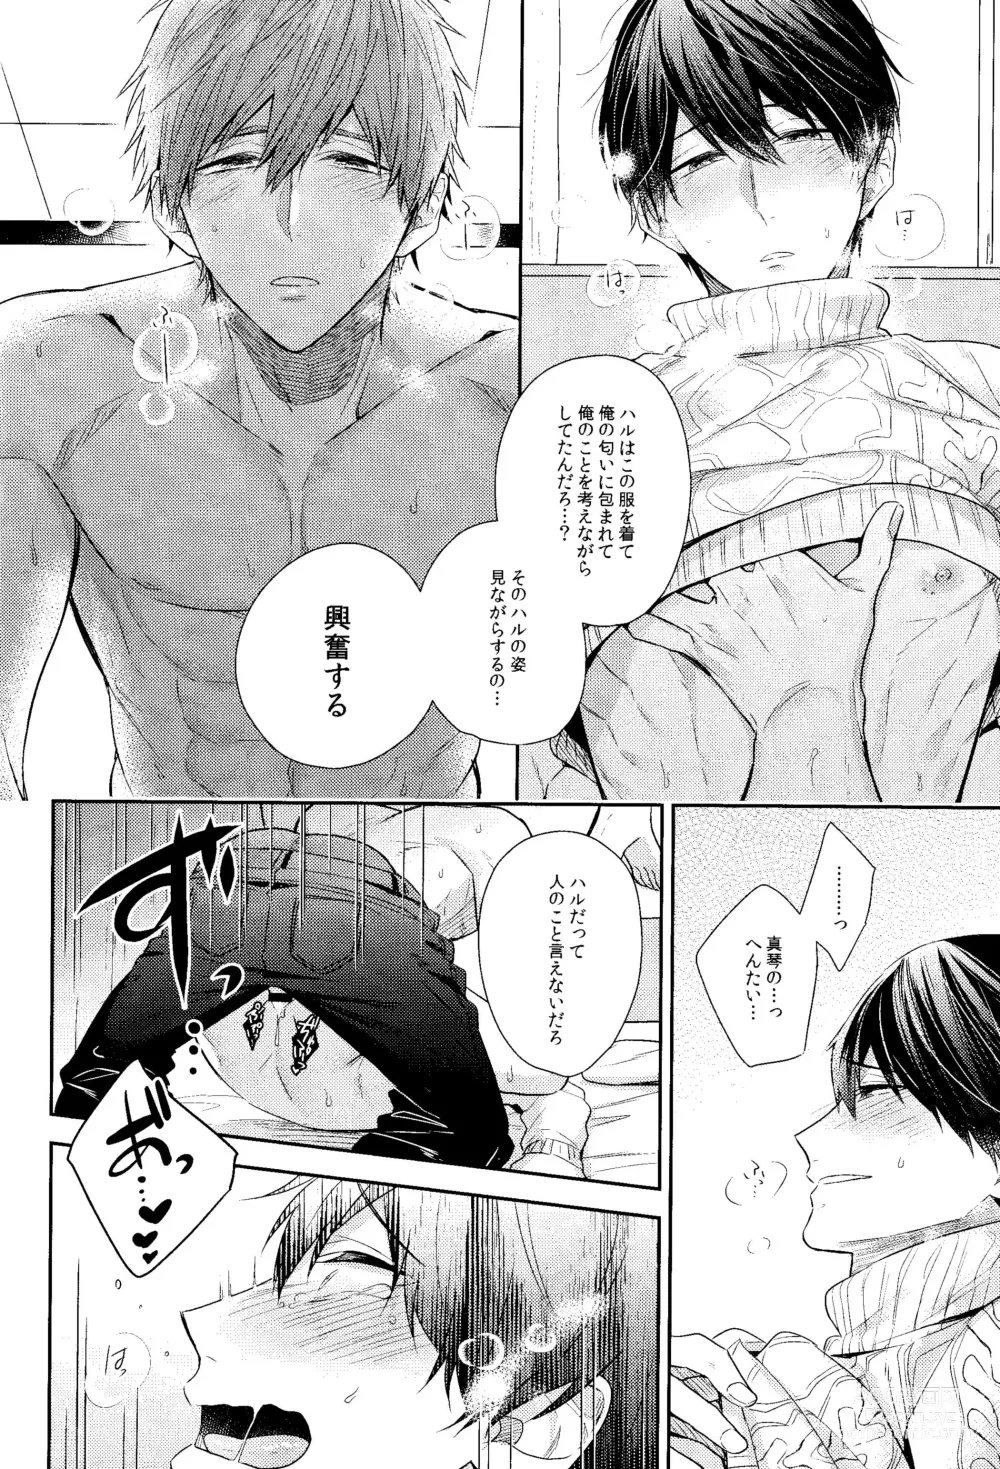 Page 29 of doujinshi Kare Knit to Makoto to Haruka.